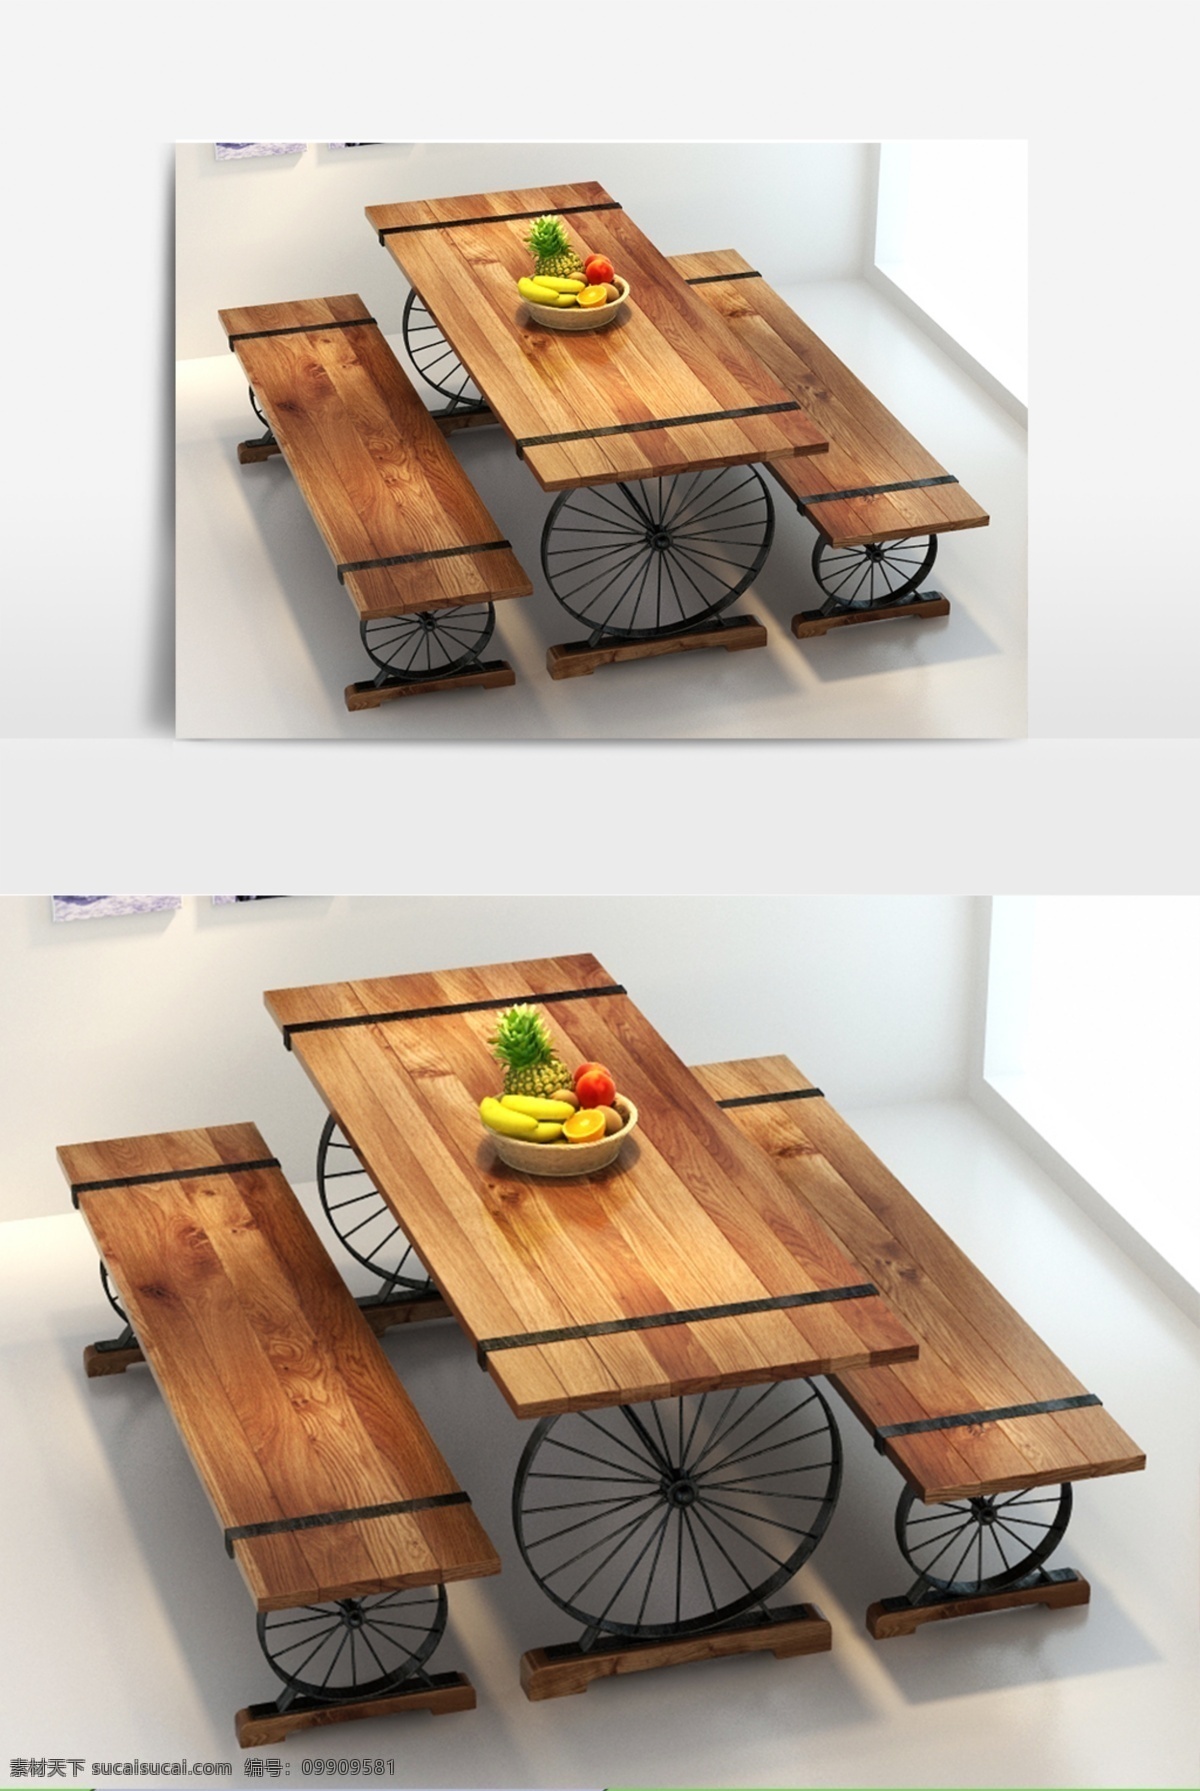 现 代工 业风 餐桌椅 模型 餐厅 餐饮 室内设计 室内装饰 3dmax 最新